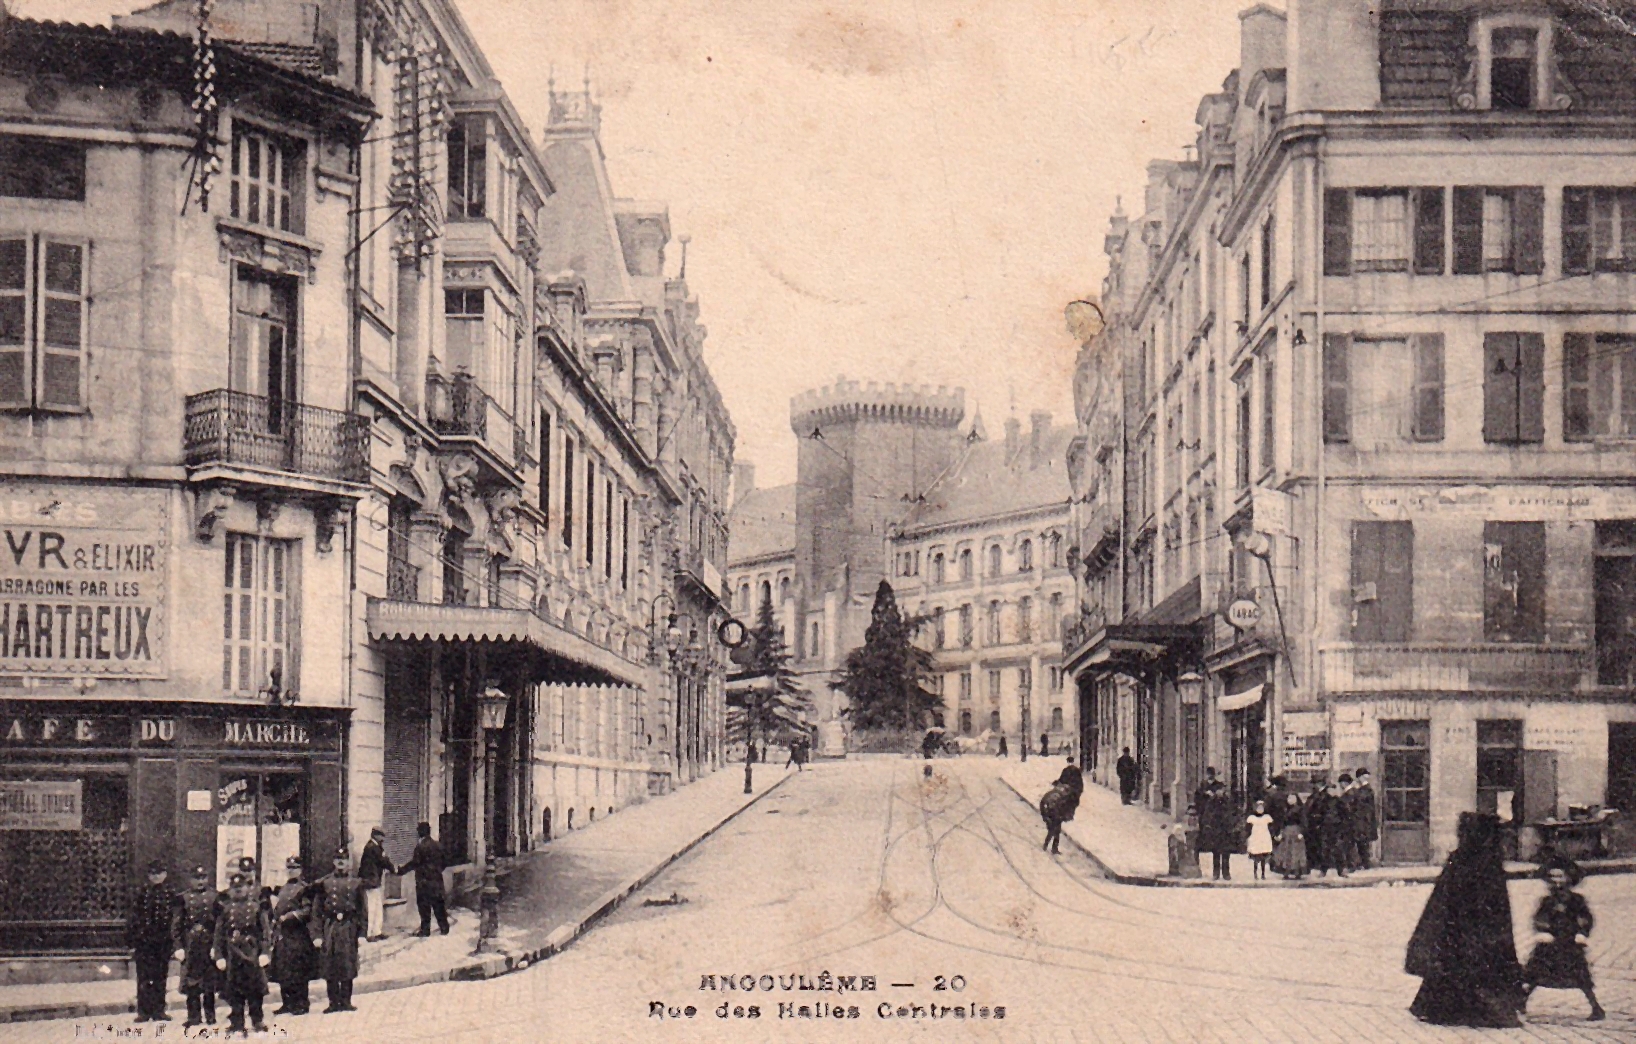 - Rue des Halles Centrales - ANGÔULÈME - 13.11.1906 -